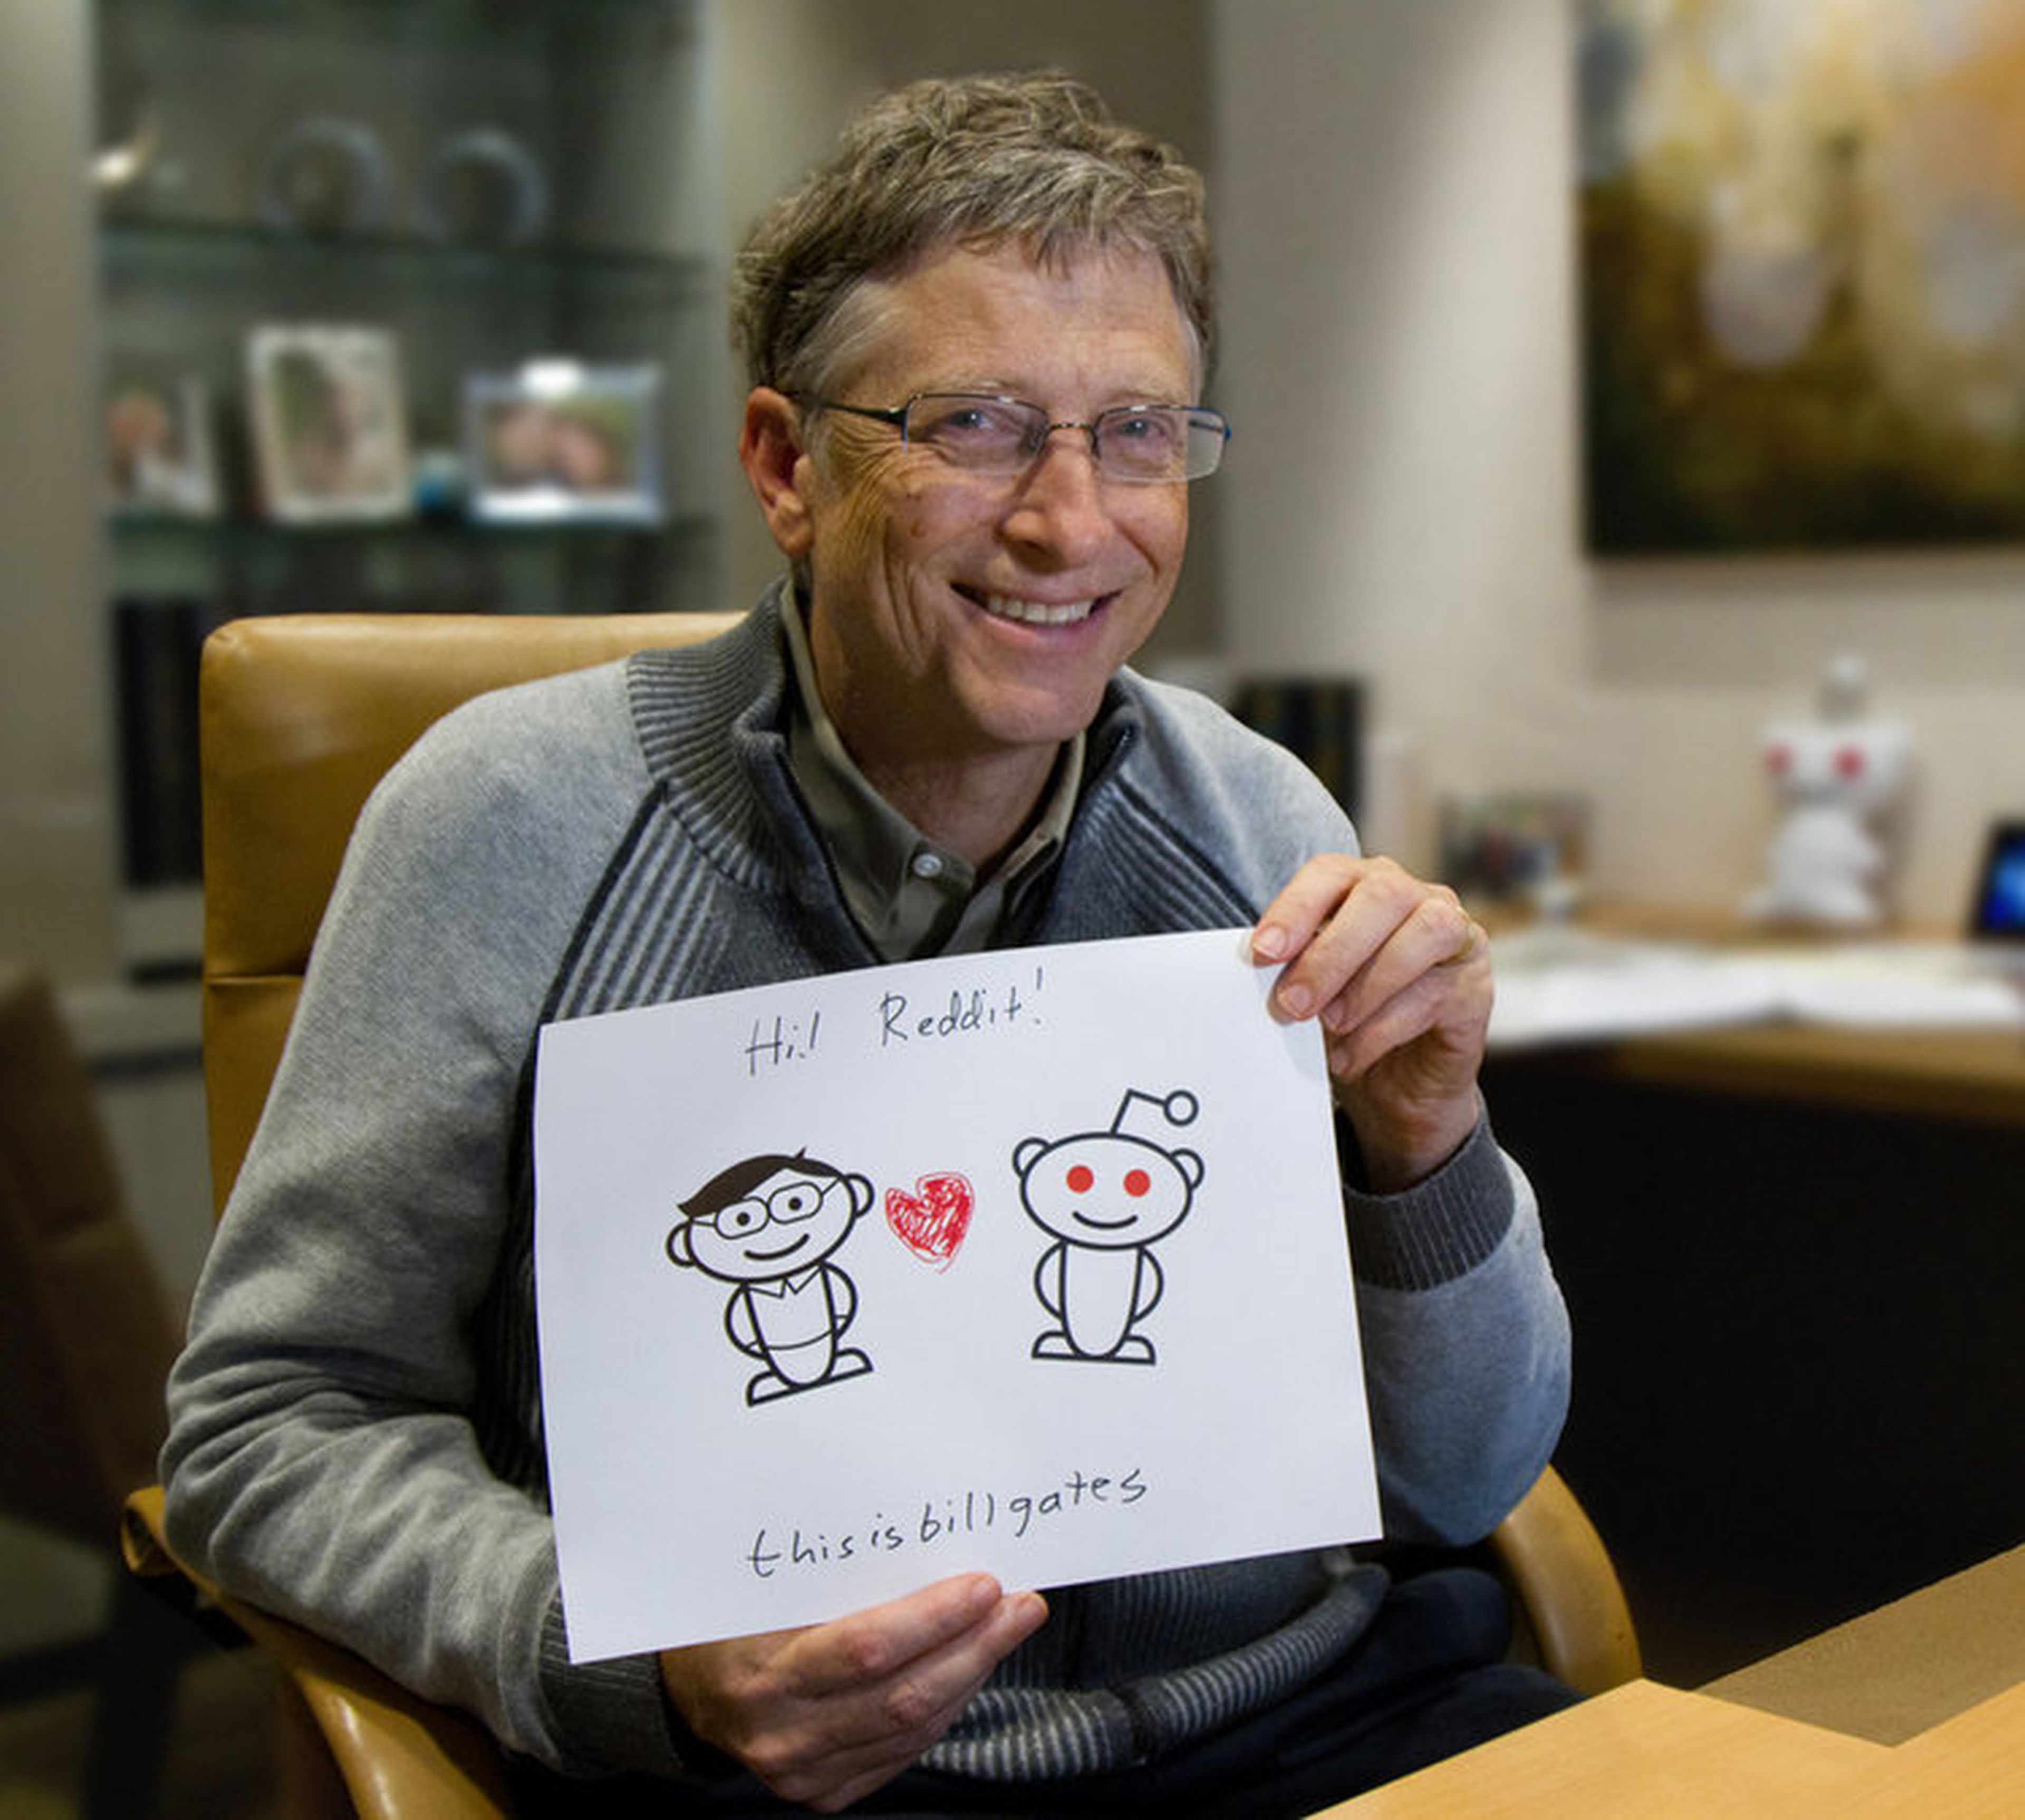 Bill Gates y Reddit